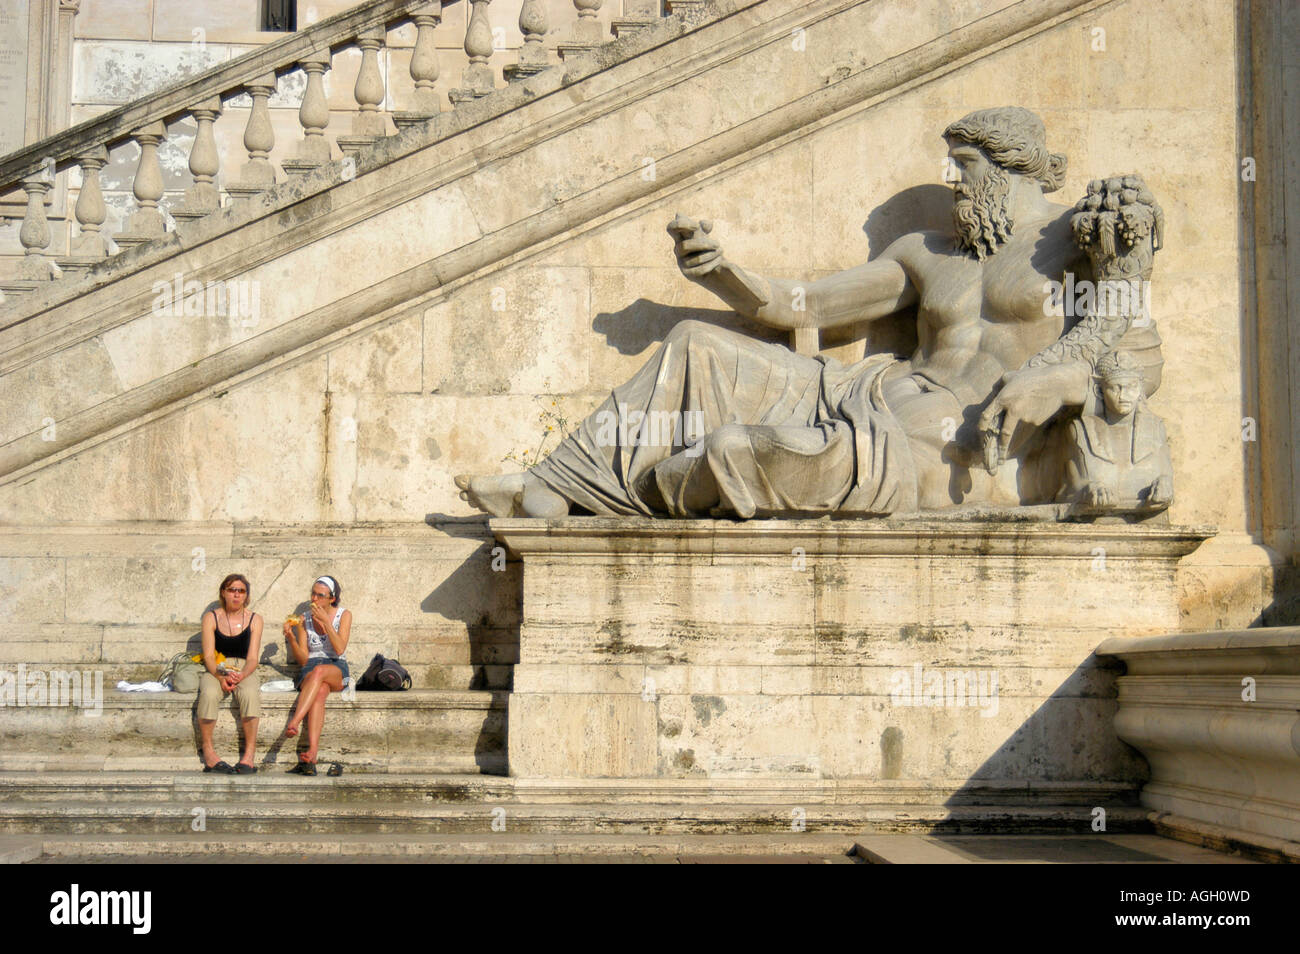 Gigantesque sculpture romaine sur la Piazza del Campidoglio, Rome, Italie Banque D'Images